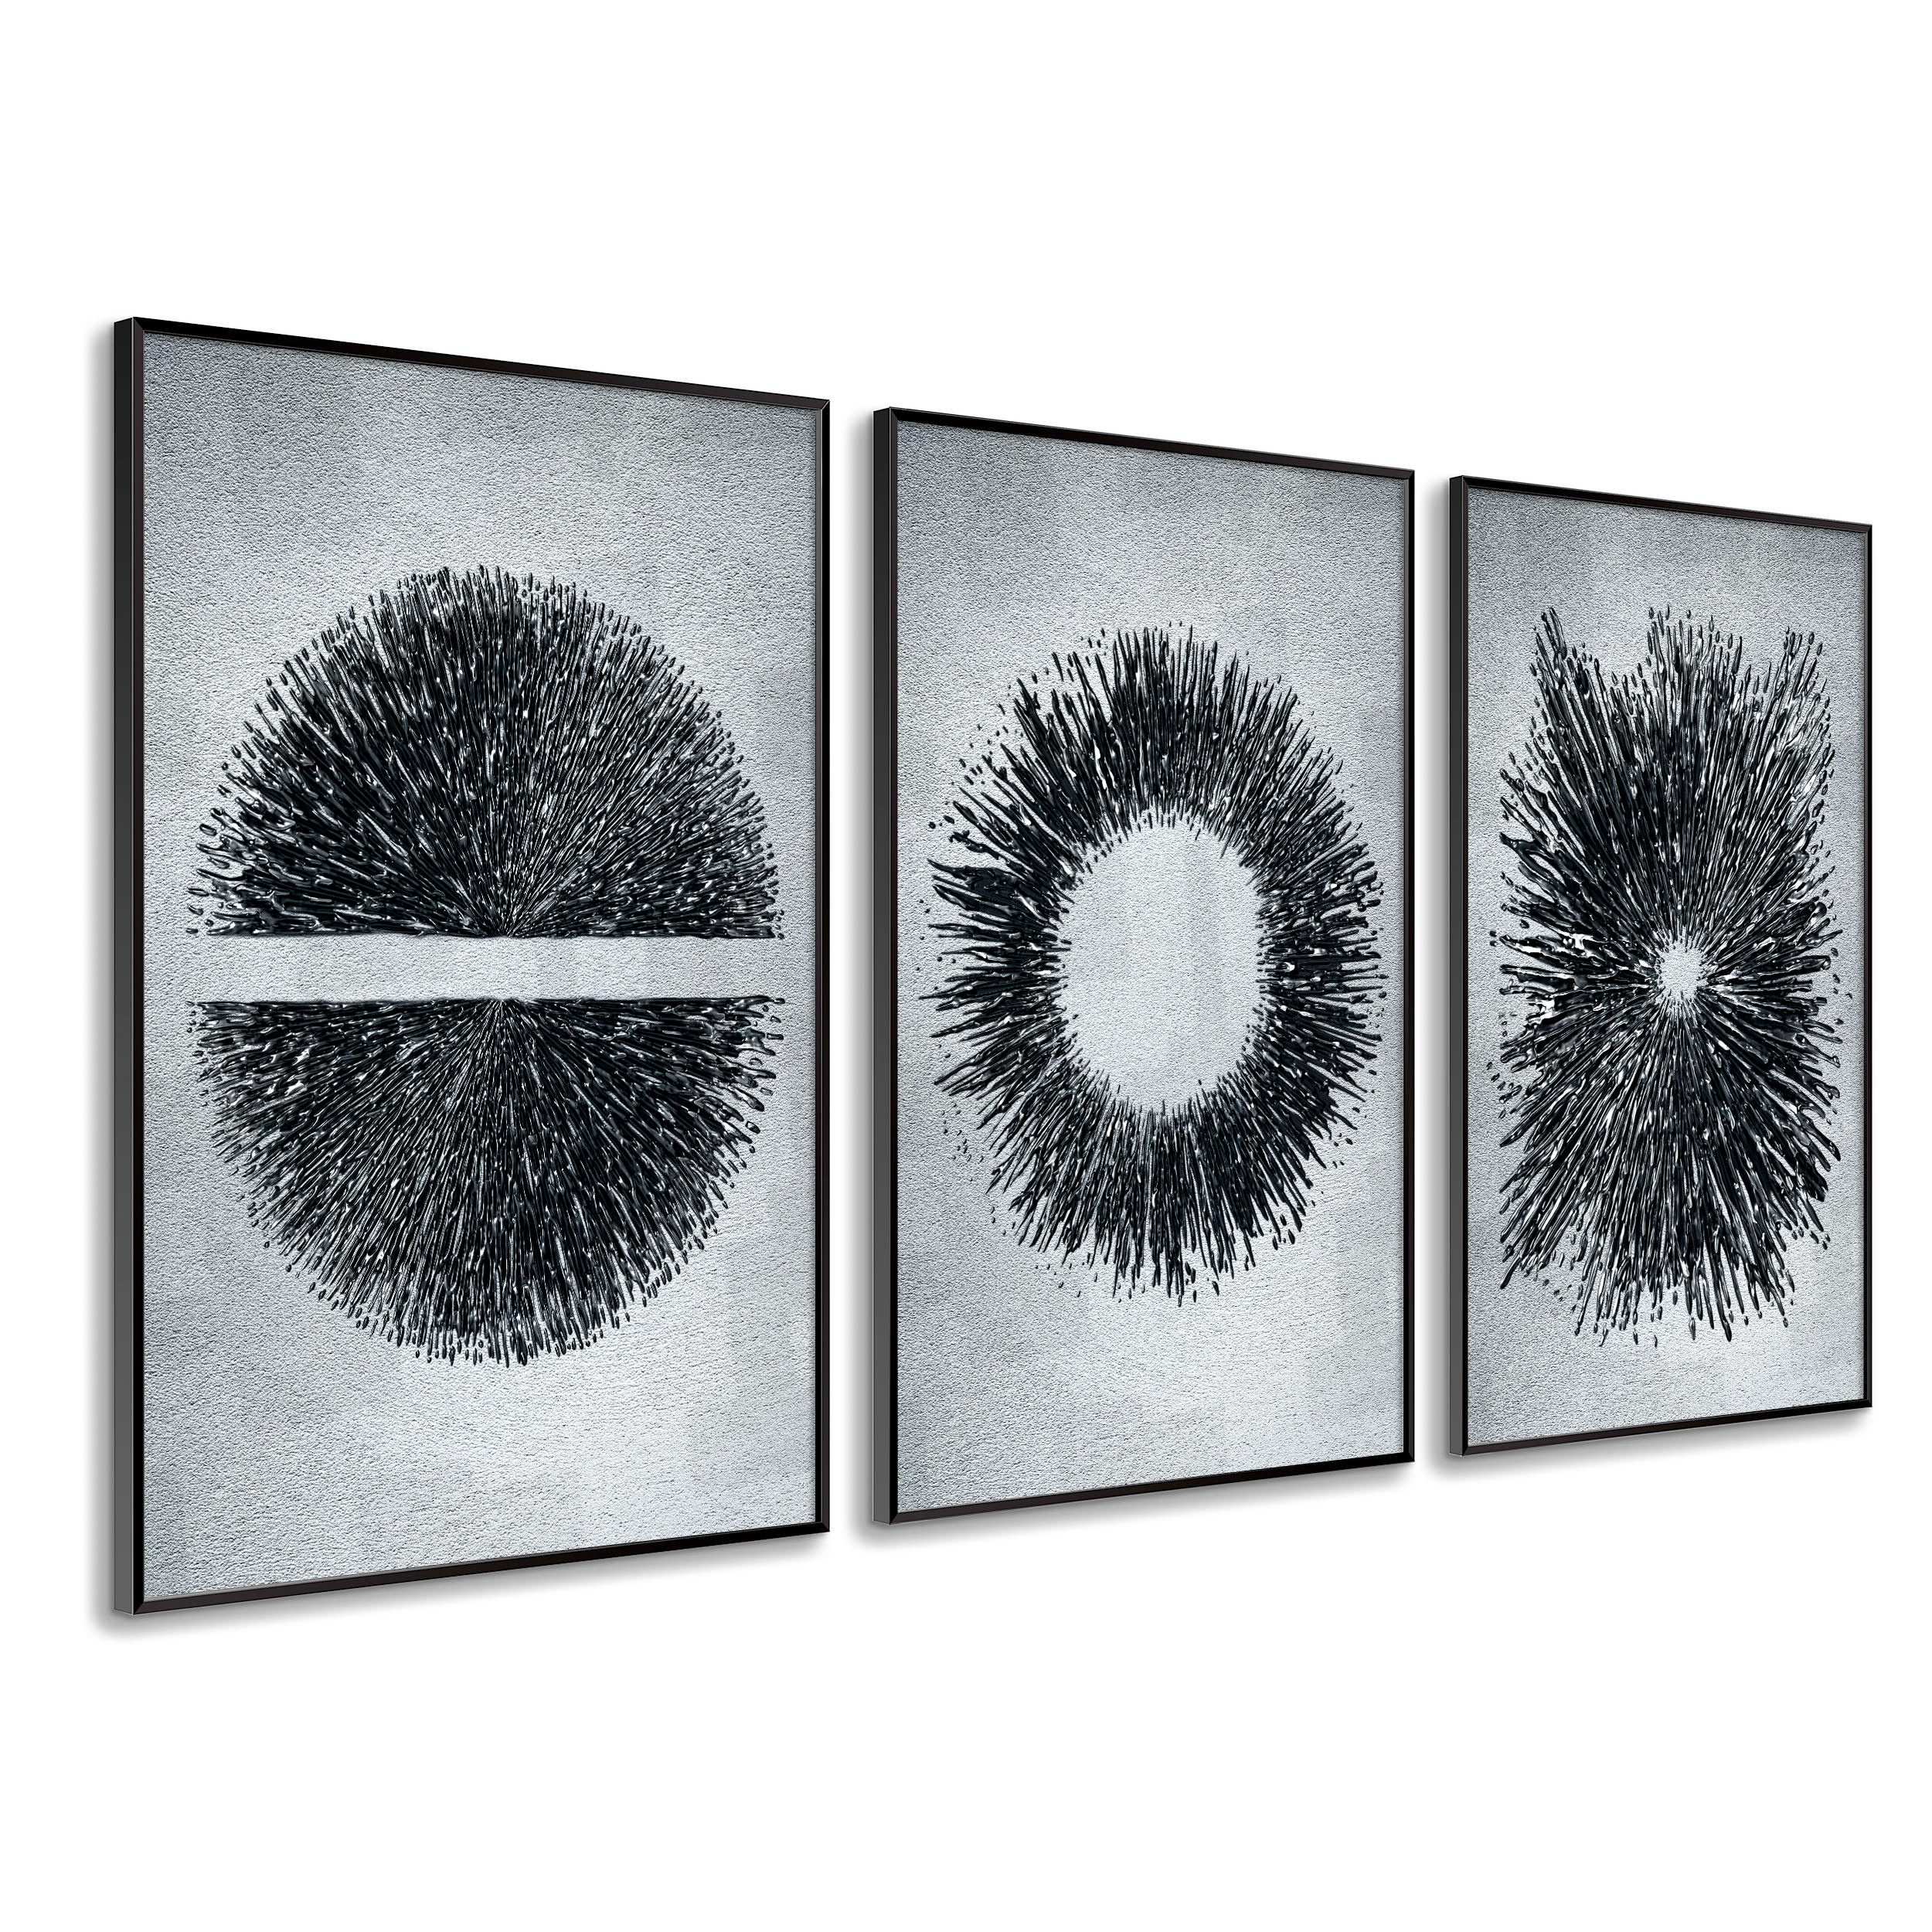 DekoArte - Cuadros decoracion salon modernos ARTE MINIMALISTA MADERA 50x70  cm x3 piezas - Cuadros con marco color negro incluido